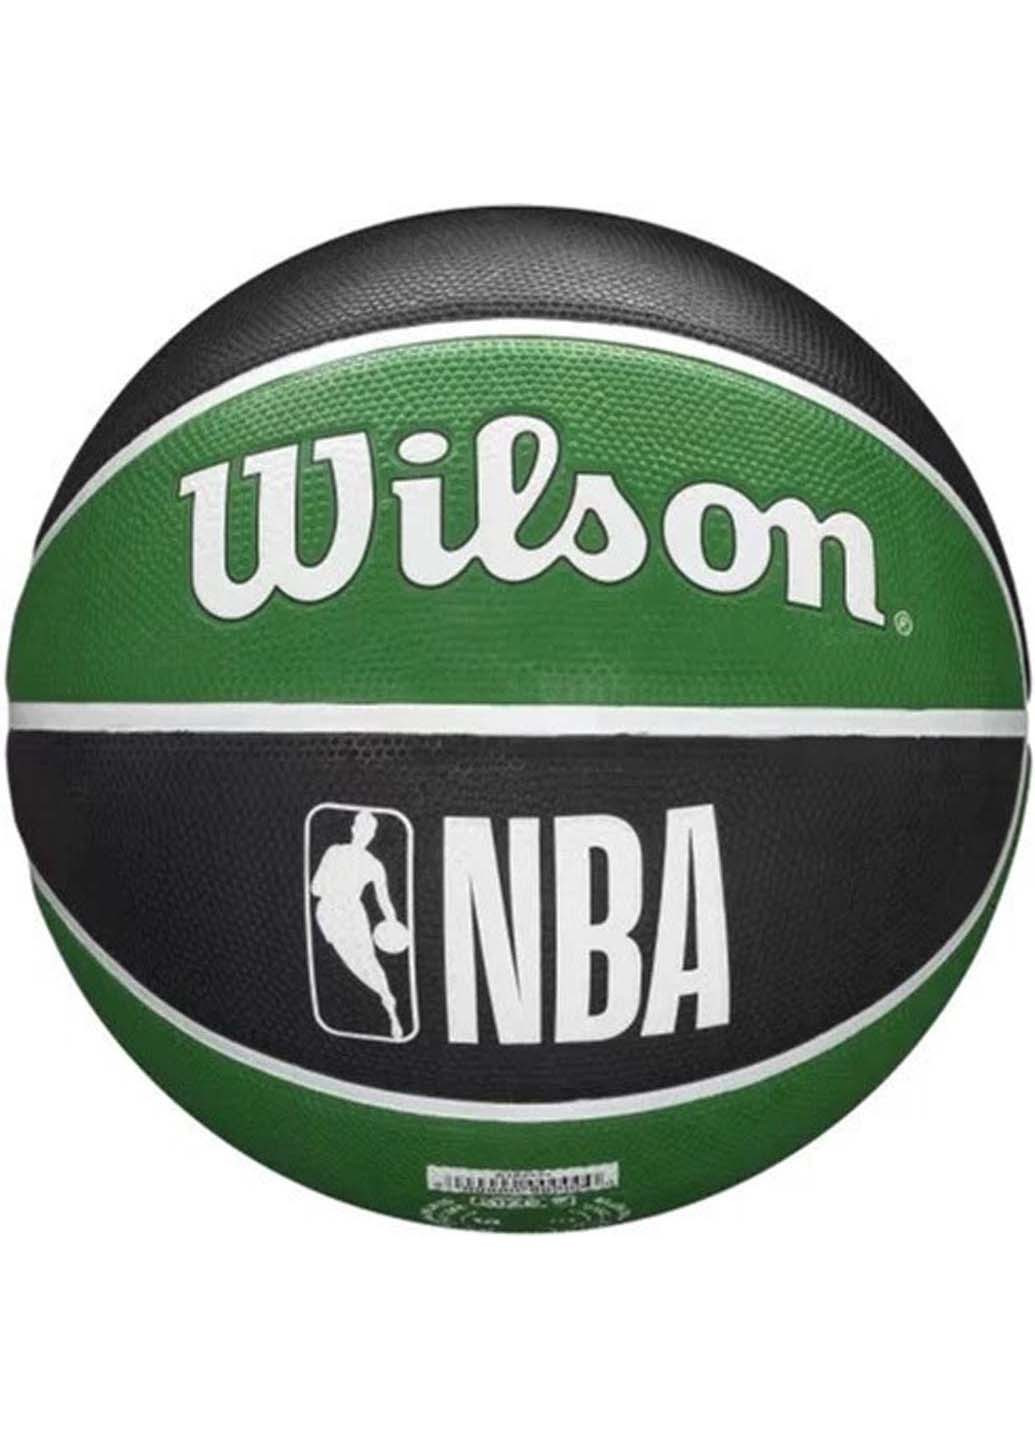 М'яч баскетбольний NBA Team Tribute Outdoor Size 7 Wilson (257606877)